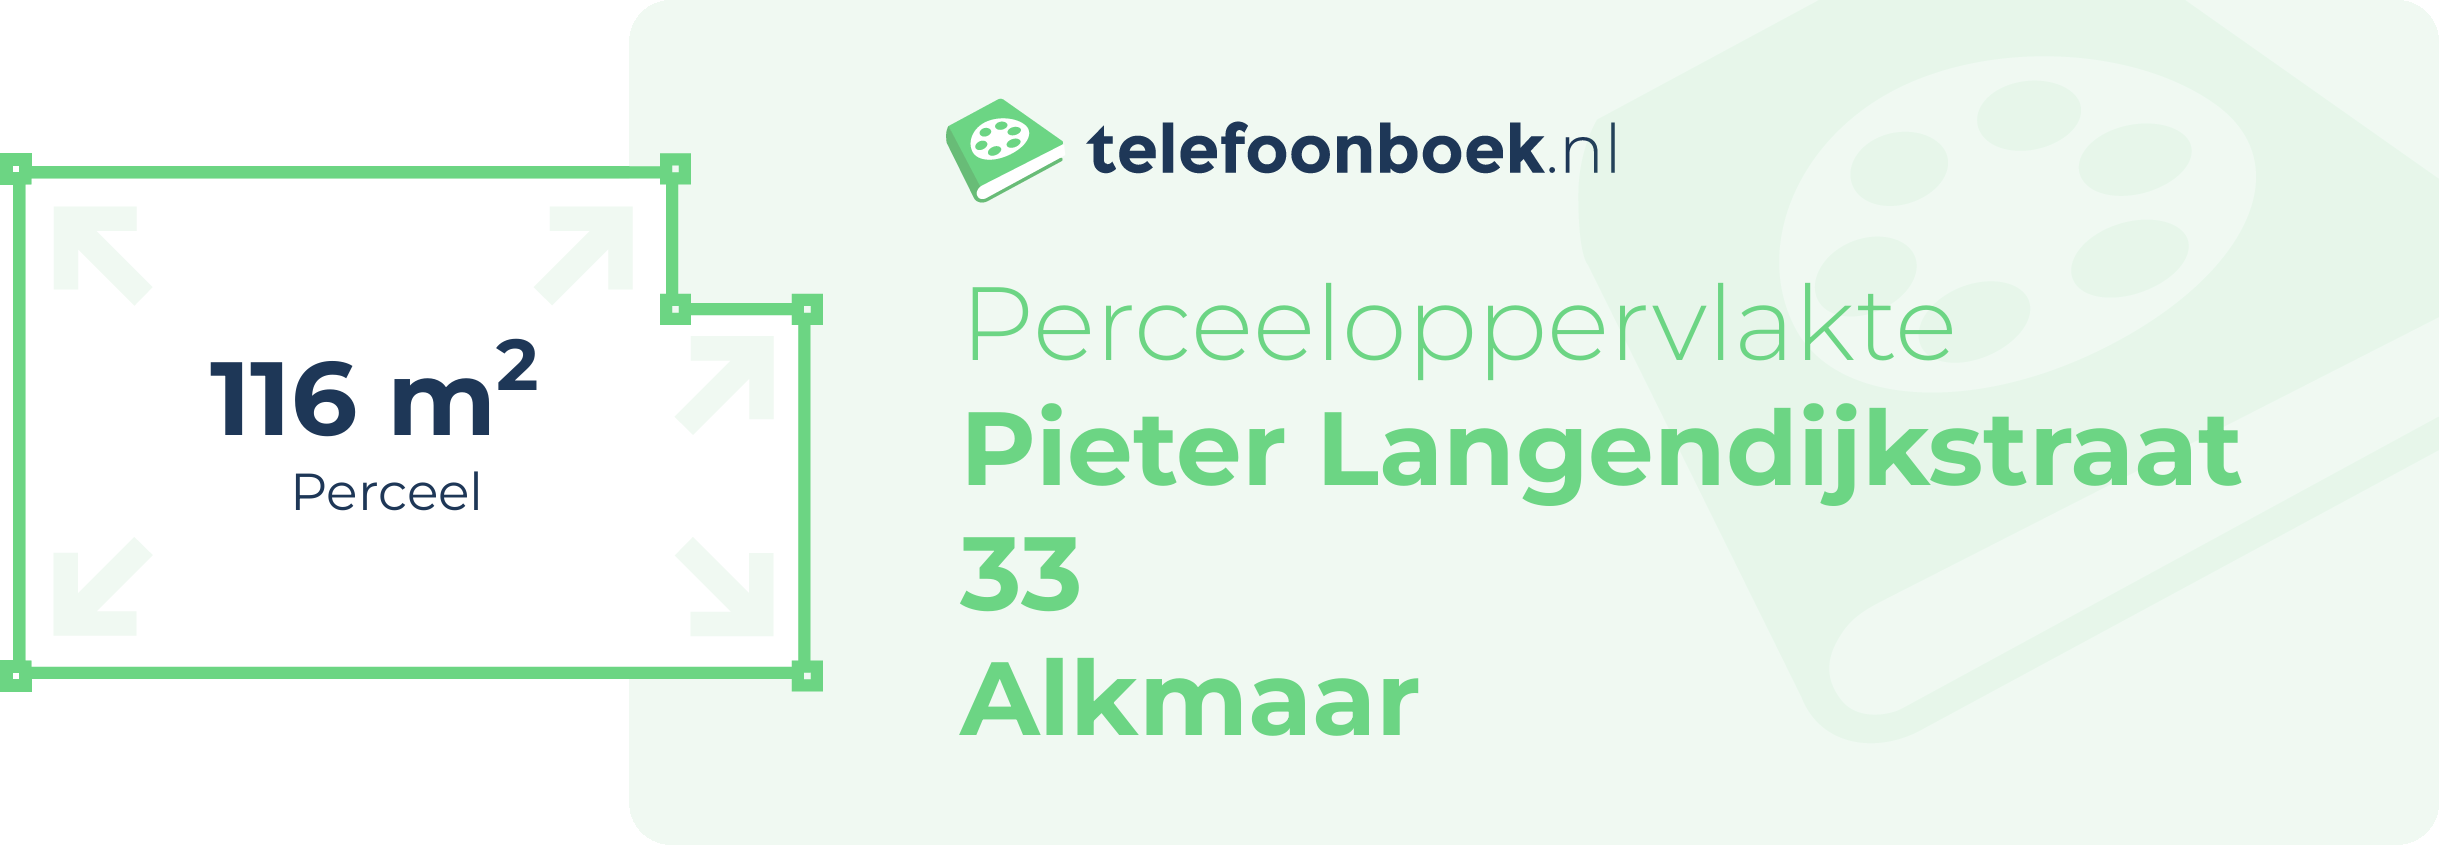 Perceeloppervlakte Pieter Langendijkstraat 33 Alkmaar